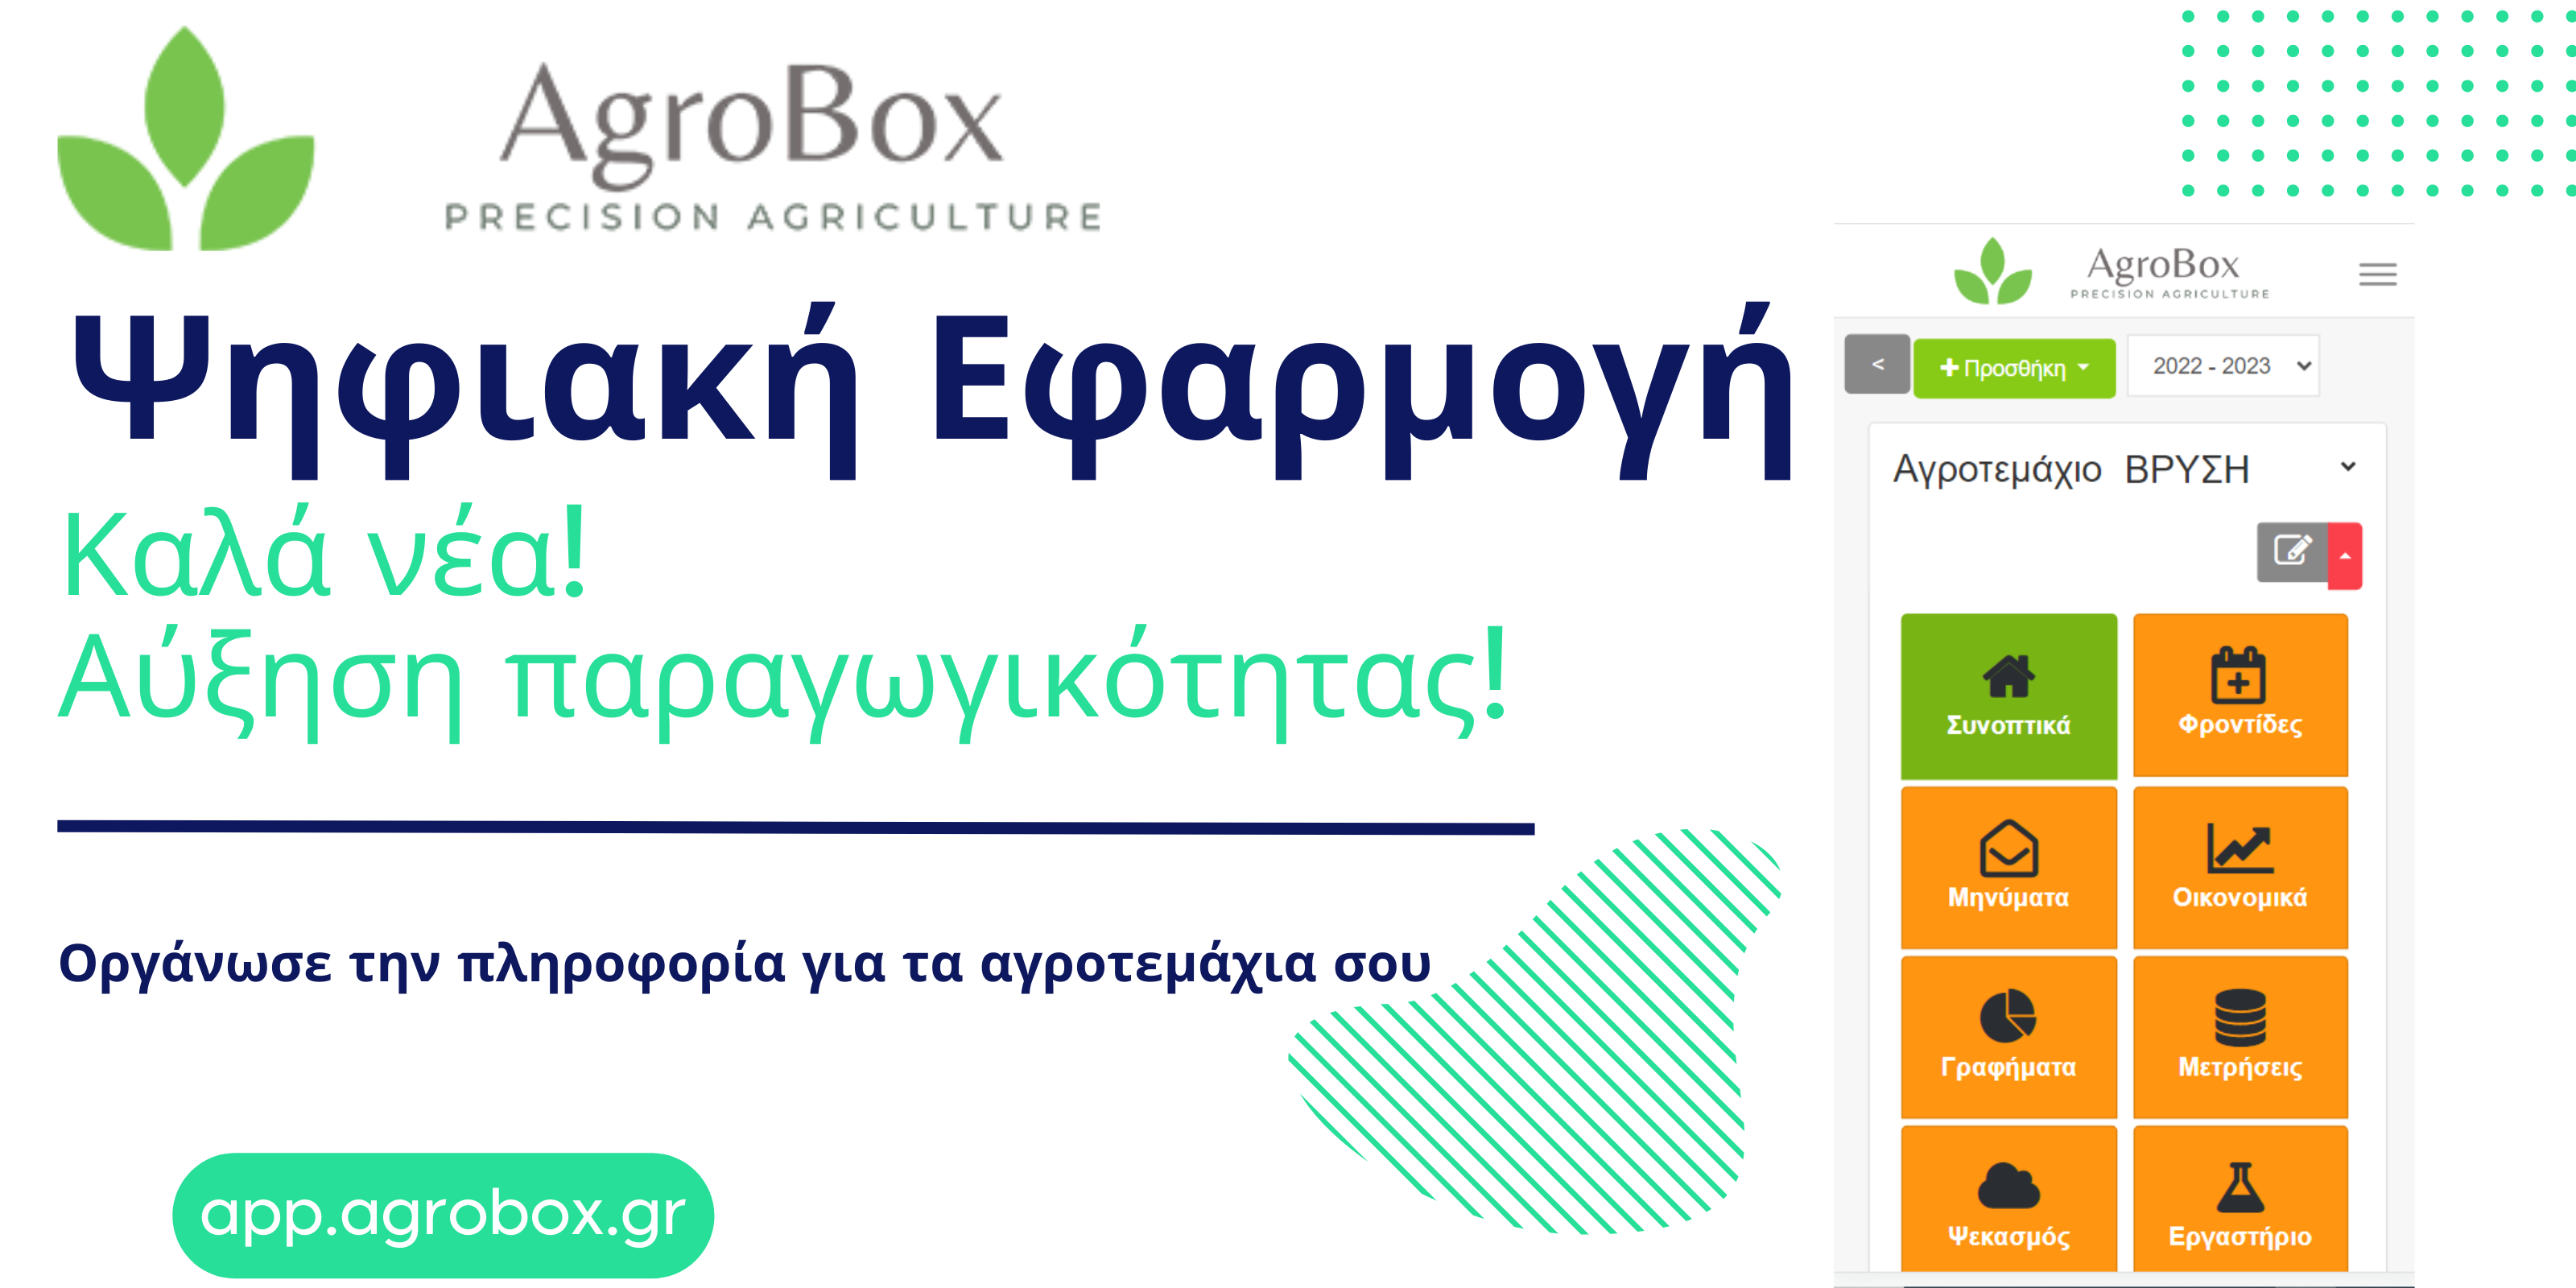 Η δημιουργία «χώρου αγοράς» από μικρές επιχειρήσεις  για την έξυπνη γεωργία στην Ελλάδα: Μια ευκαιρία για καινοτομία και αειφορία